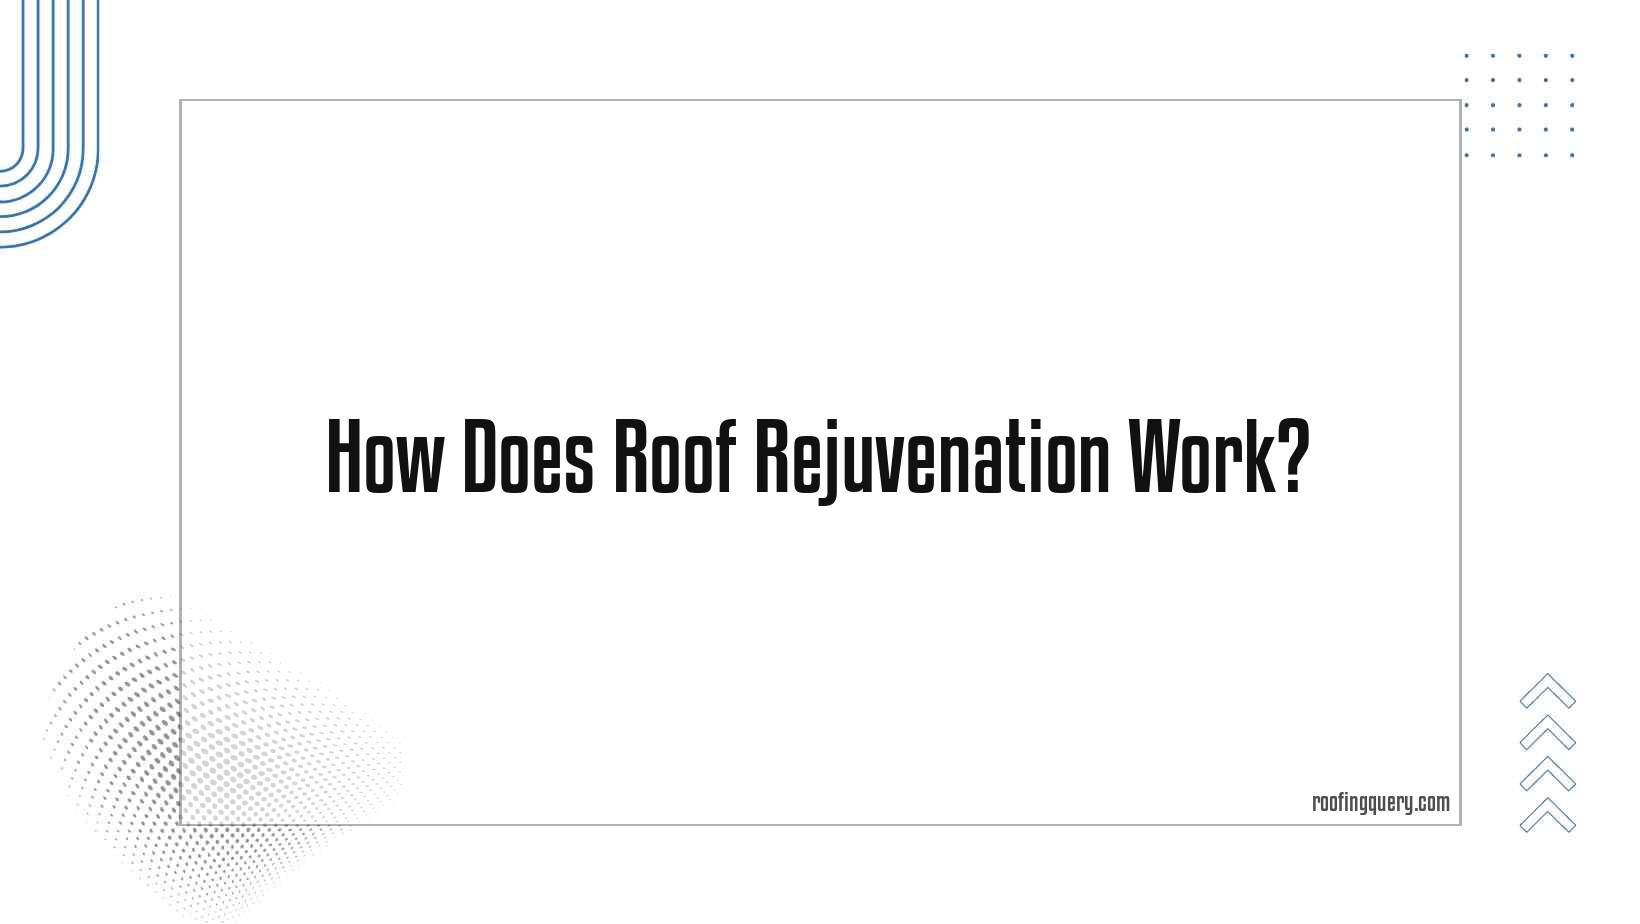 How Does Roof Rejuvenation Work?